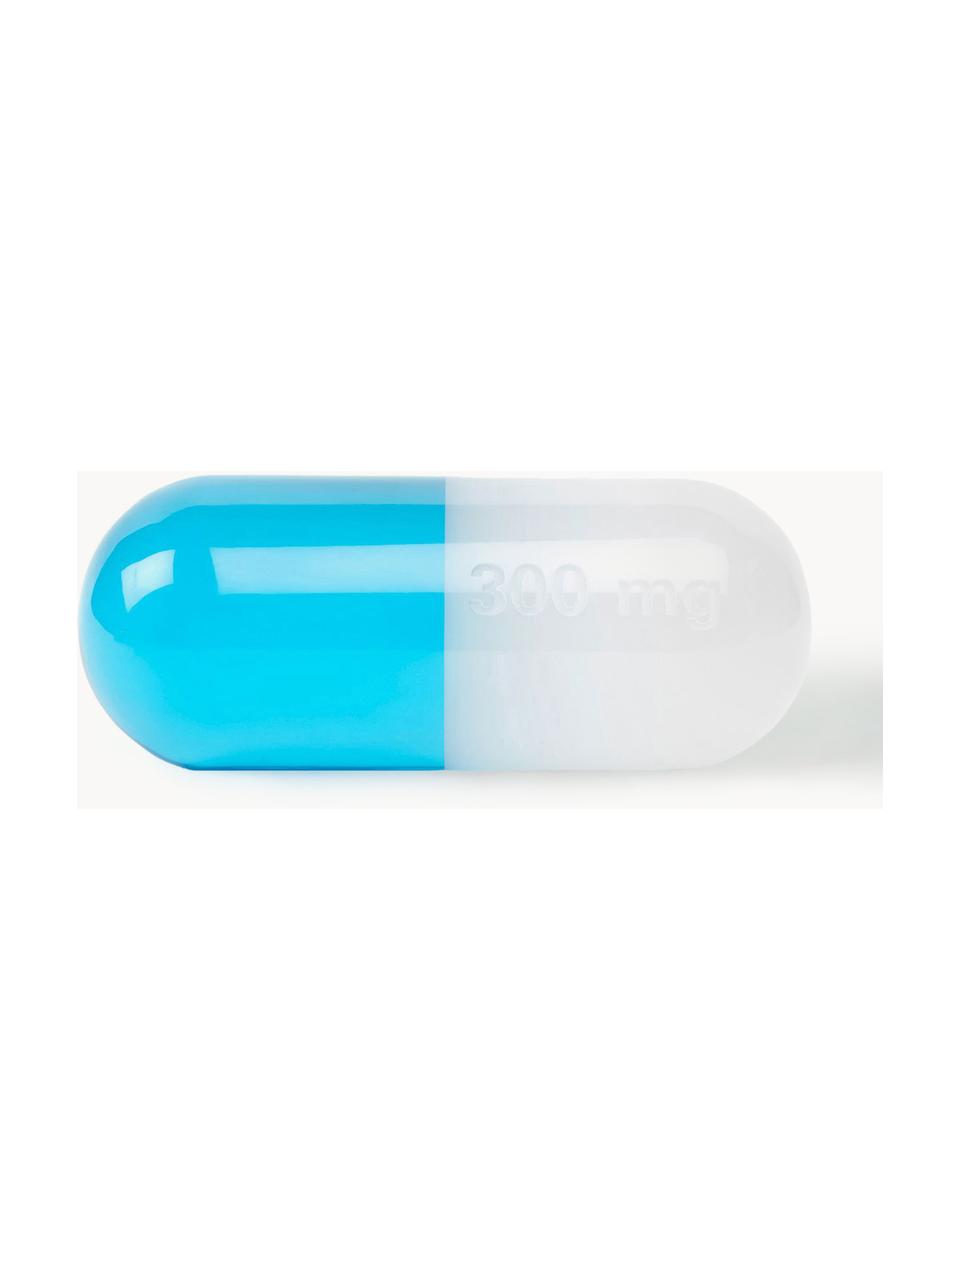 Dekoracja Pill, Poliakryl polerowany, Biały, turkusowy, S 24 x W 9 cm